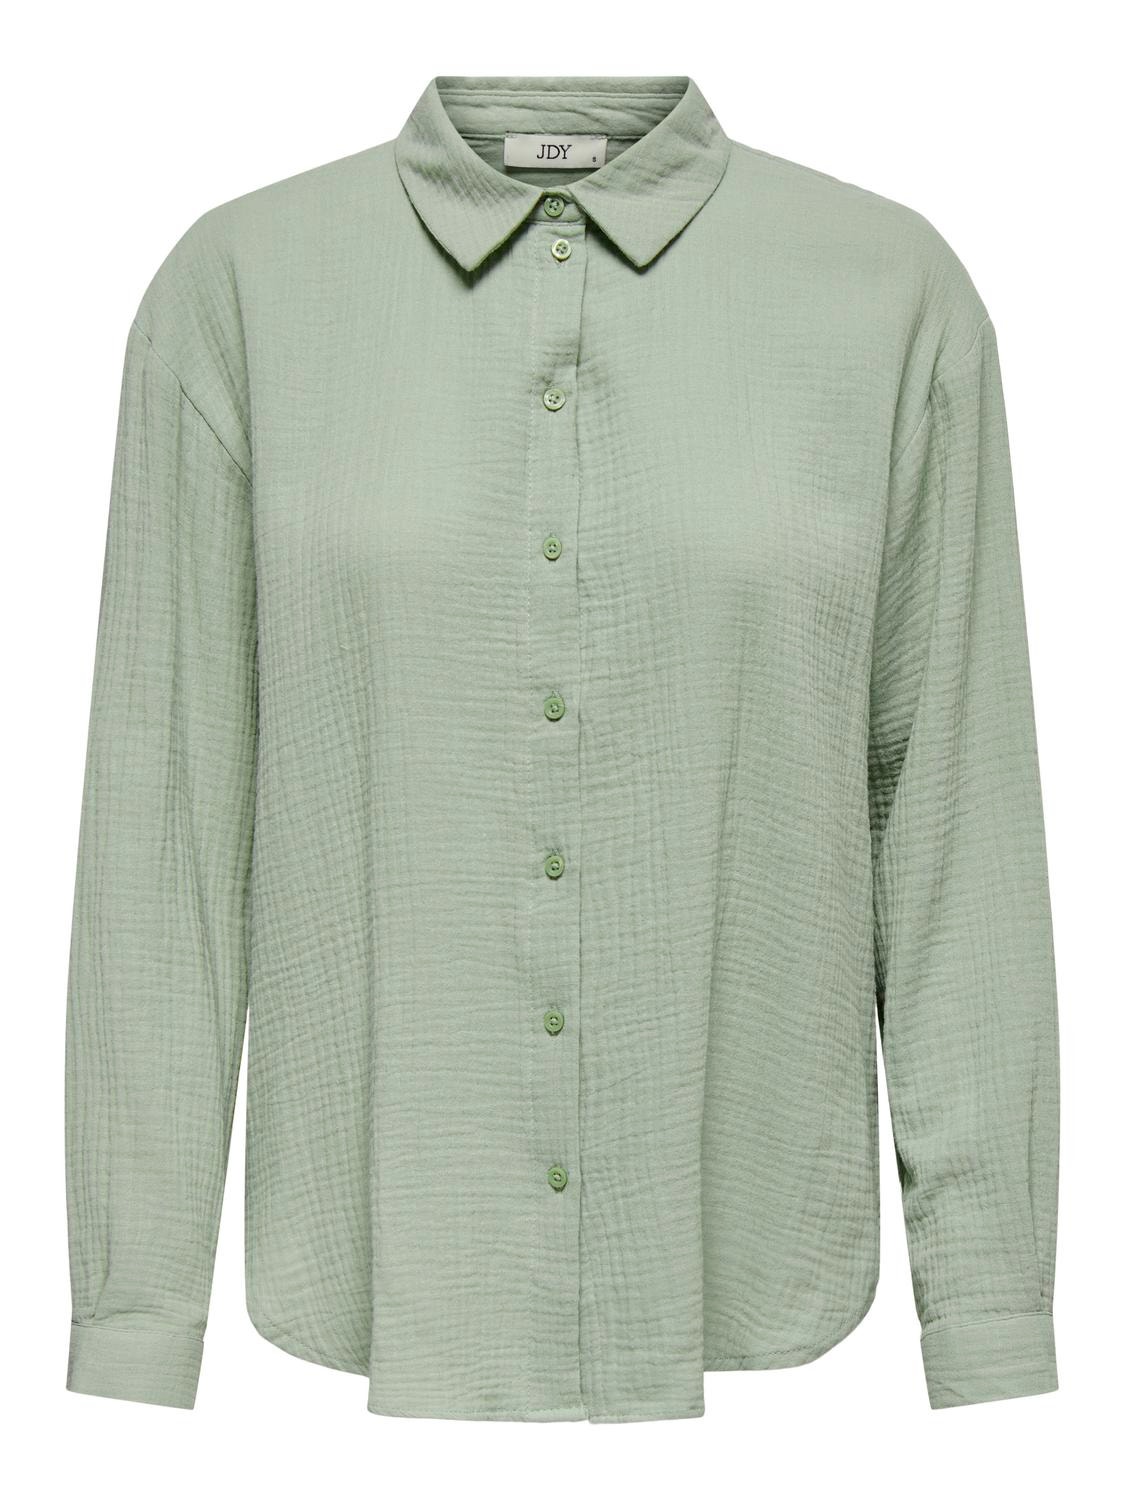 ONLY Regular Fit Shirt collar Buttoned cuffs Volume sleeves Shirt -Desert Sage - 15271018